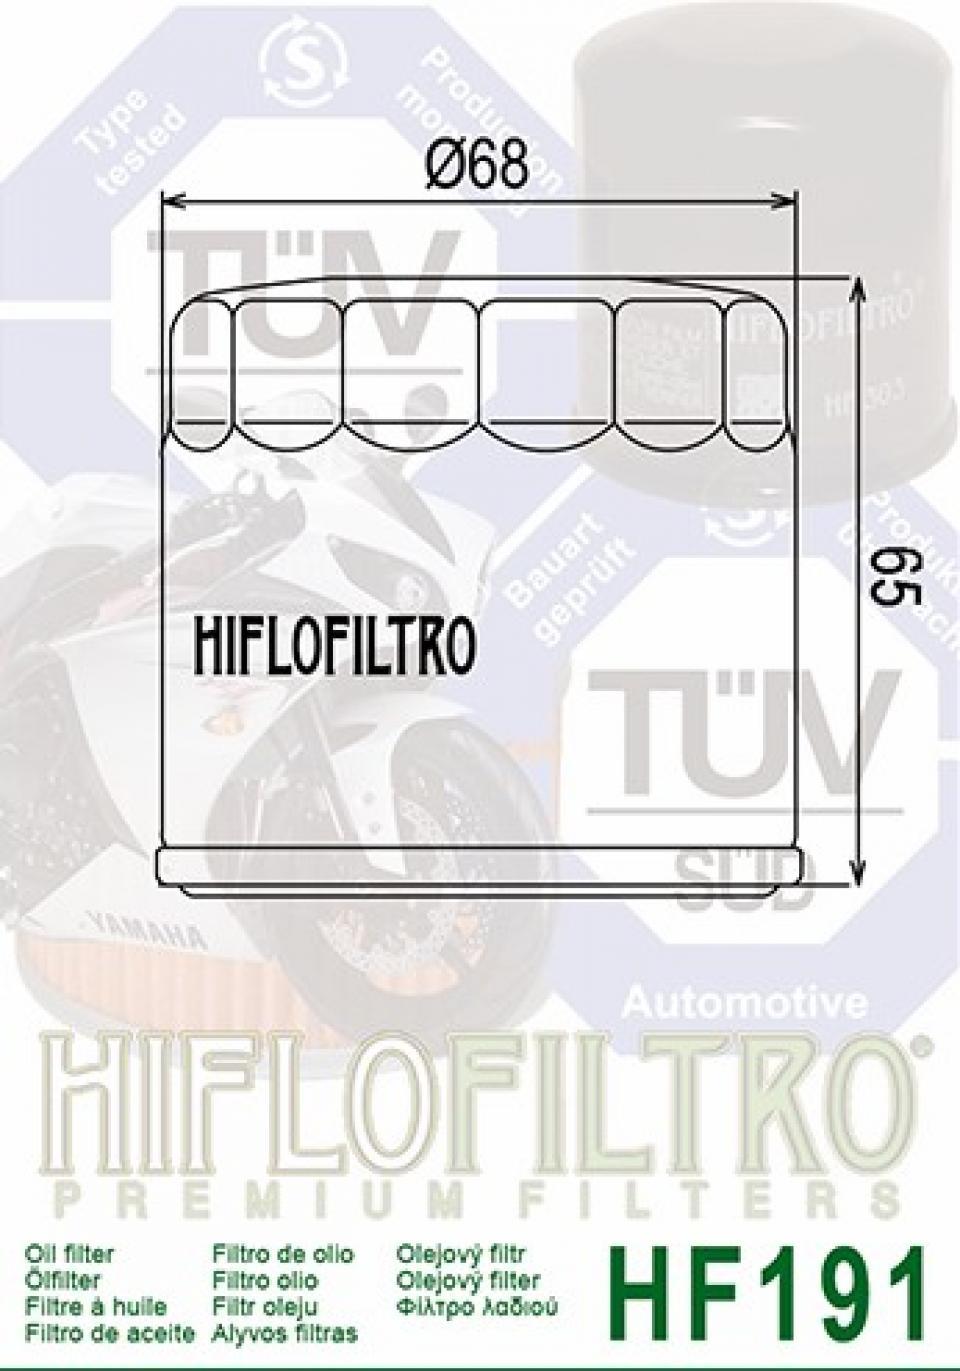 Filtre à huile Hiflofiltro pour Moto Triumph 885 Speed Triple T509 1997 à 1998 HF191 Neuf